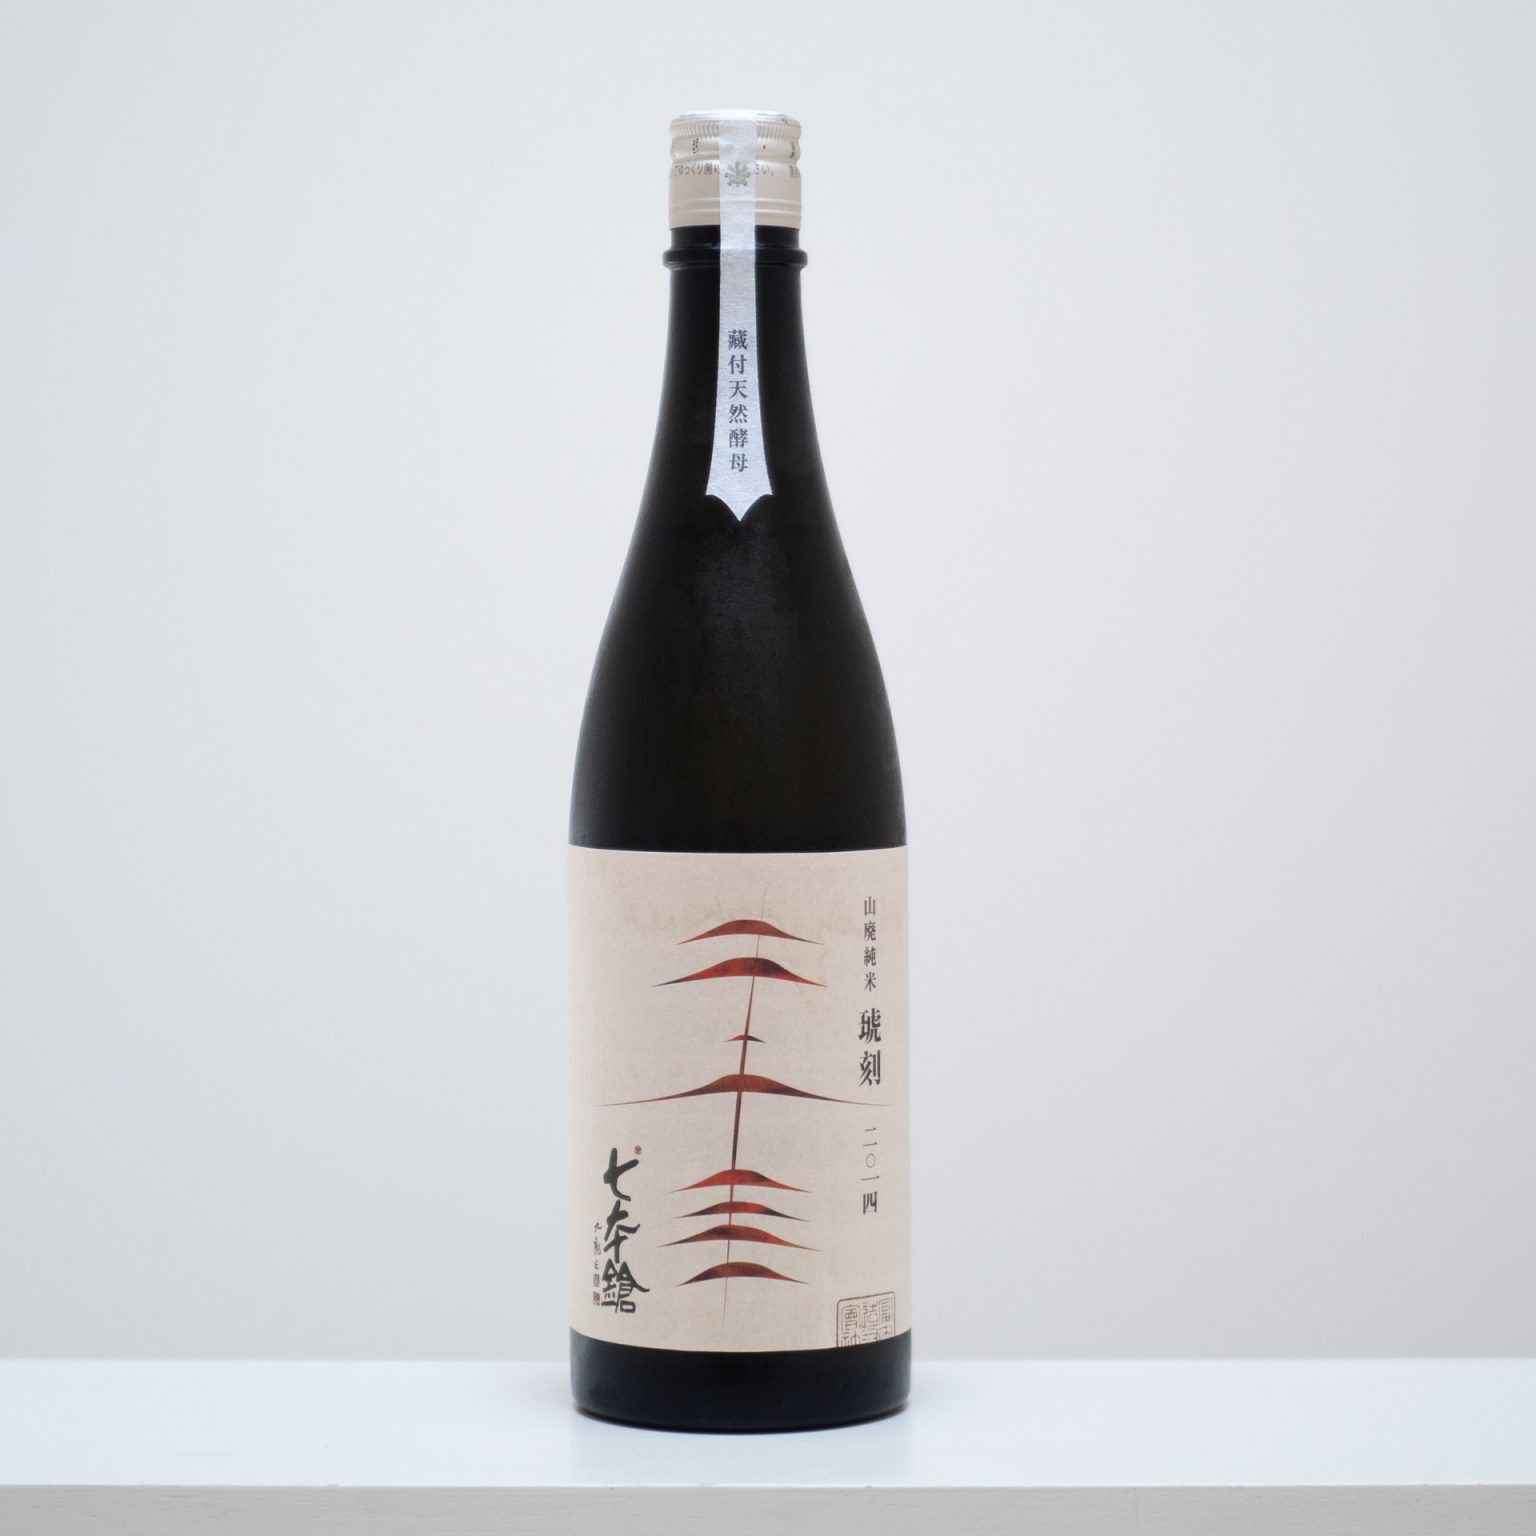 滋賀県長浜市にある冨田酒造の「七本鎗（しちほんやり）」のヴィンテージ酒「琥刻（ここく）」の2014年。蔵付き酵母による山廃仕込みの純米酒。杯を重ねるほどに、深まるコクと余韻に浸る。